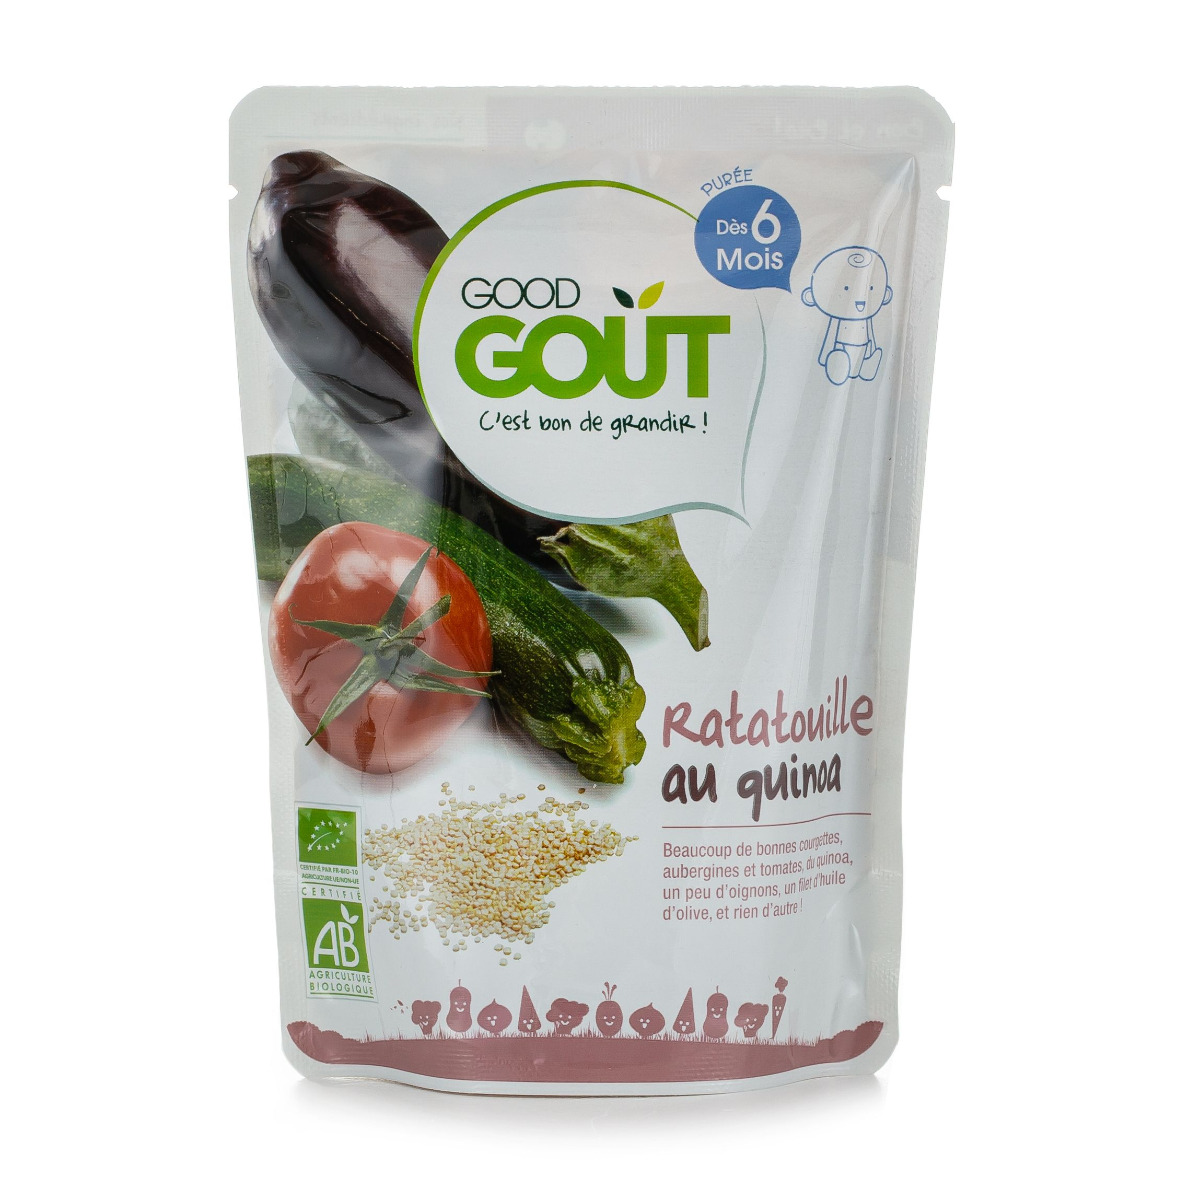 Good Gout BIO Ratatouille s quinou 6m+ 190 g Good Gout